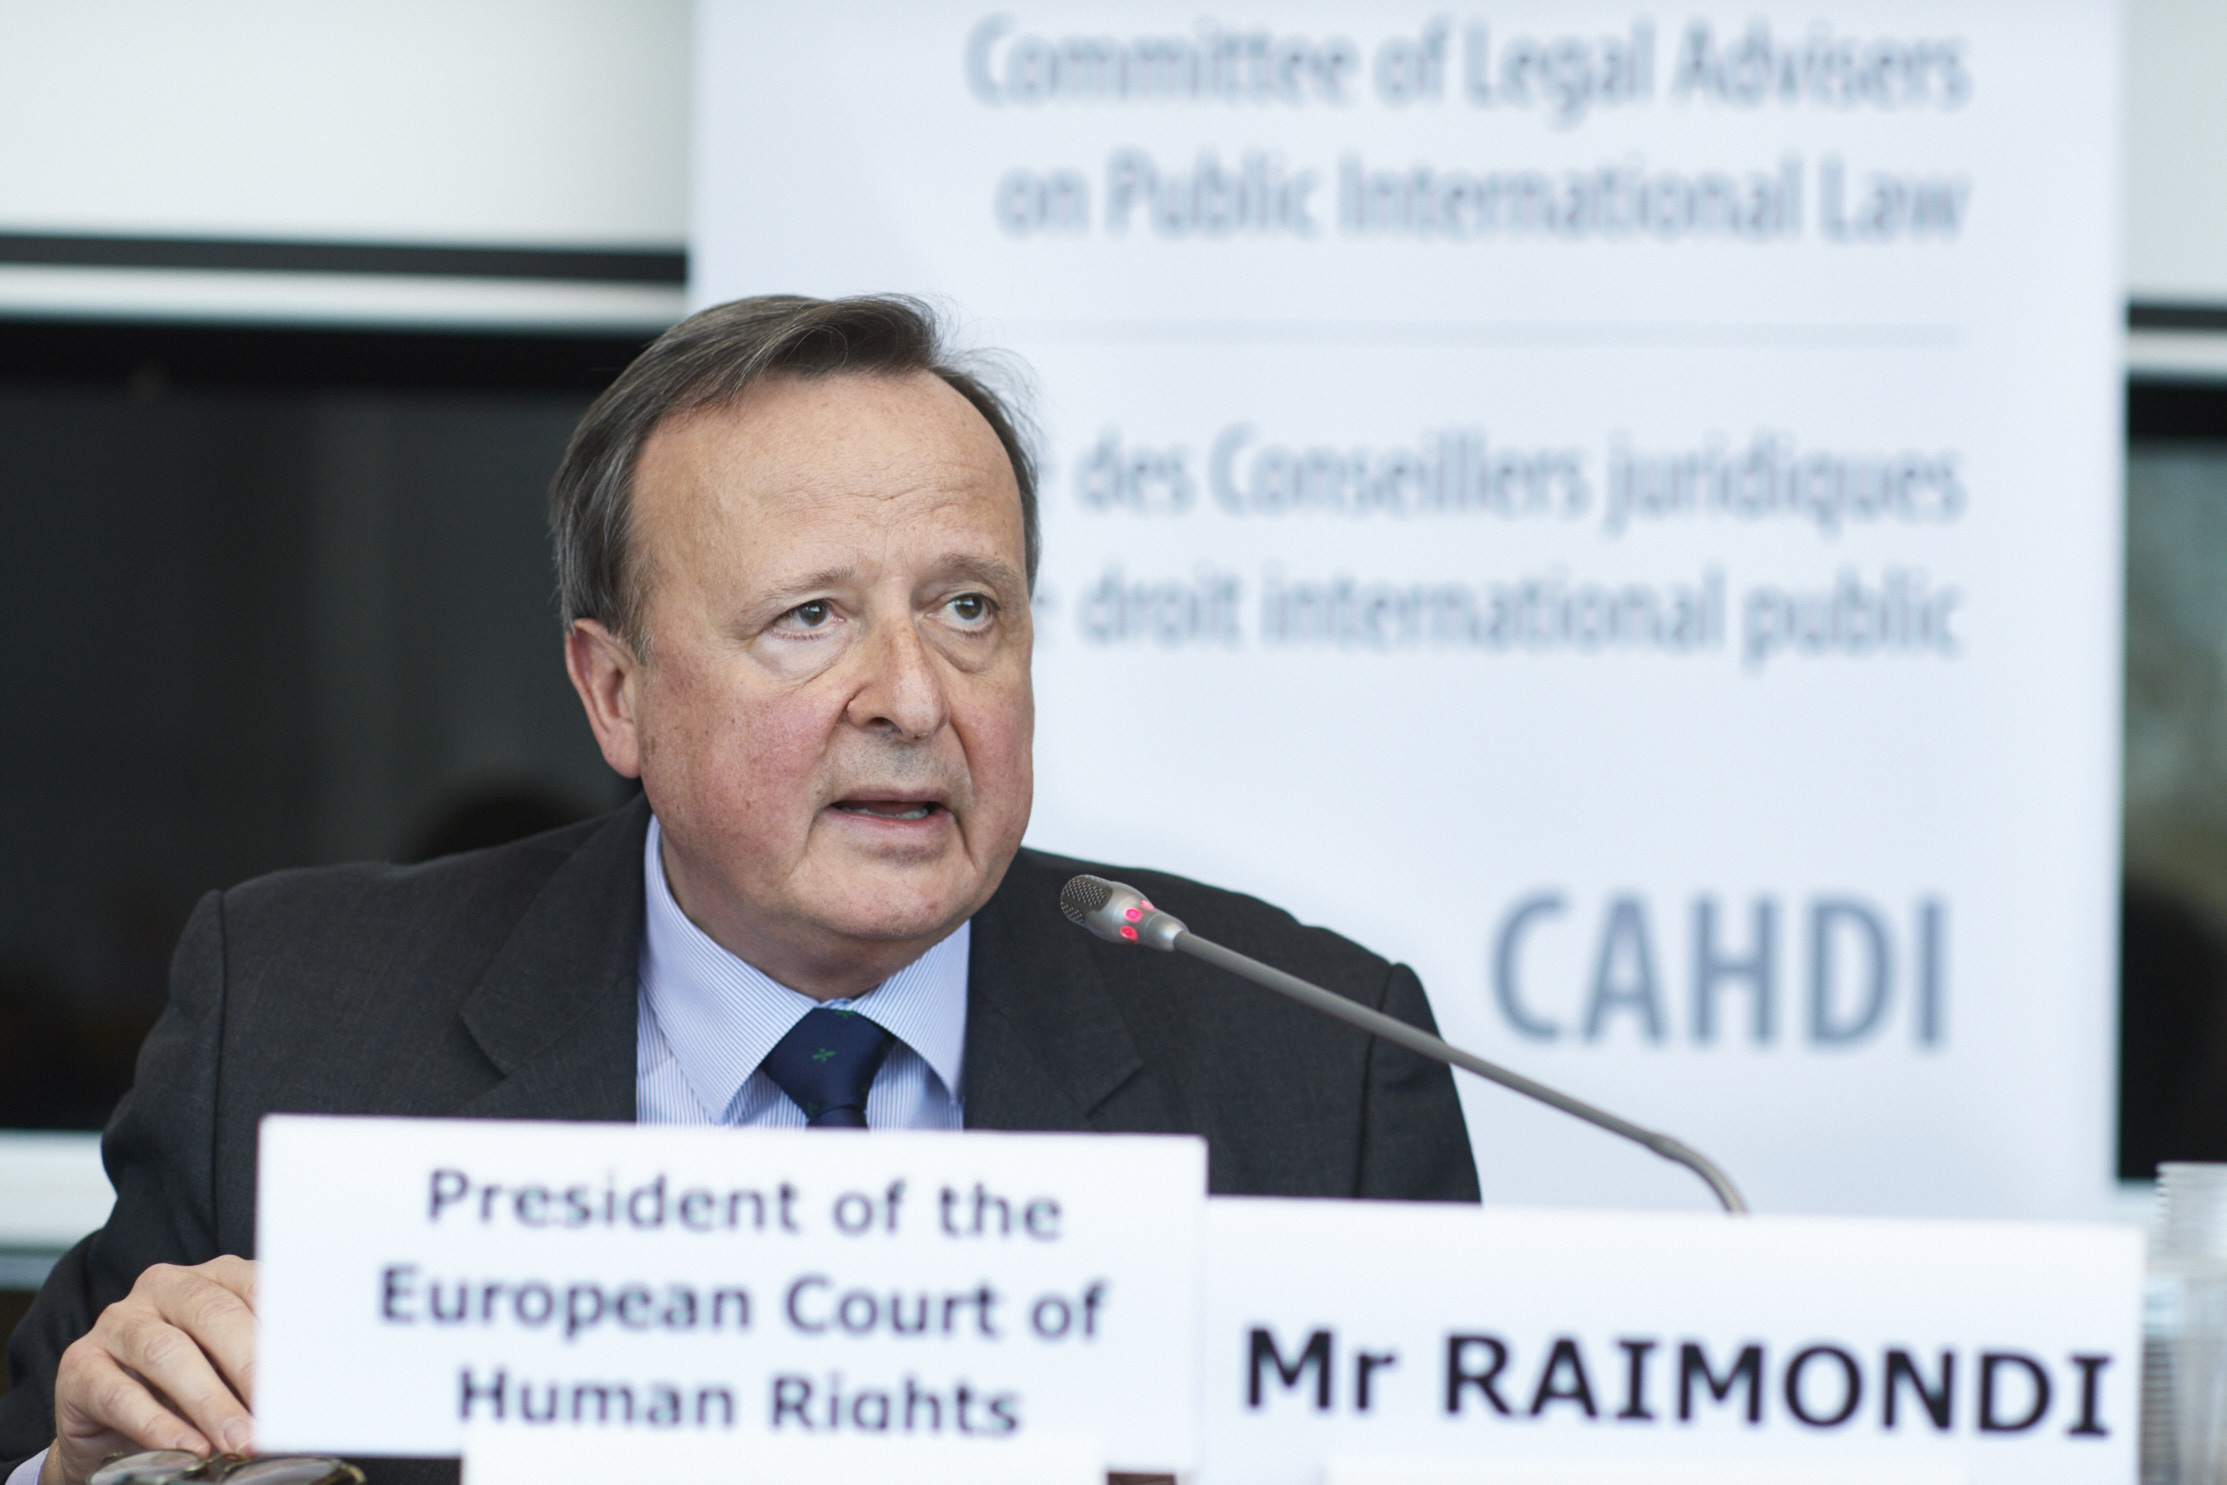 Présentation de M. Guido Raimondi, Président de la Cour européenne des droits de l'homme, lors de la 53ème réunion du CAHDI